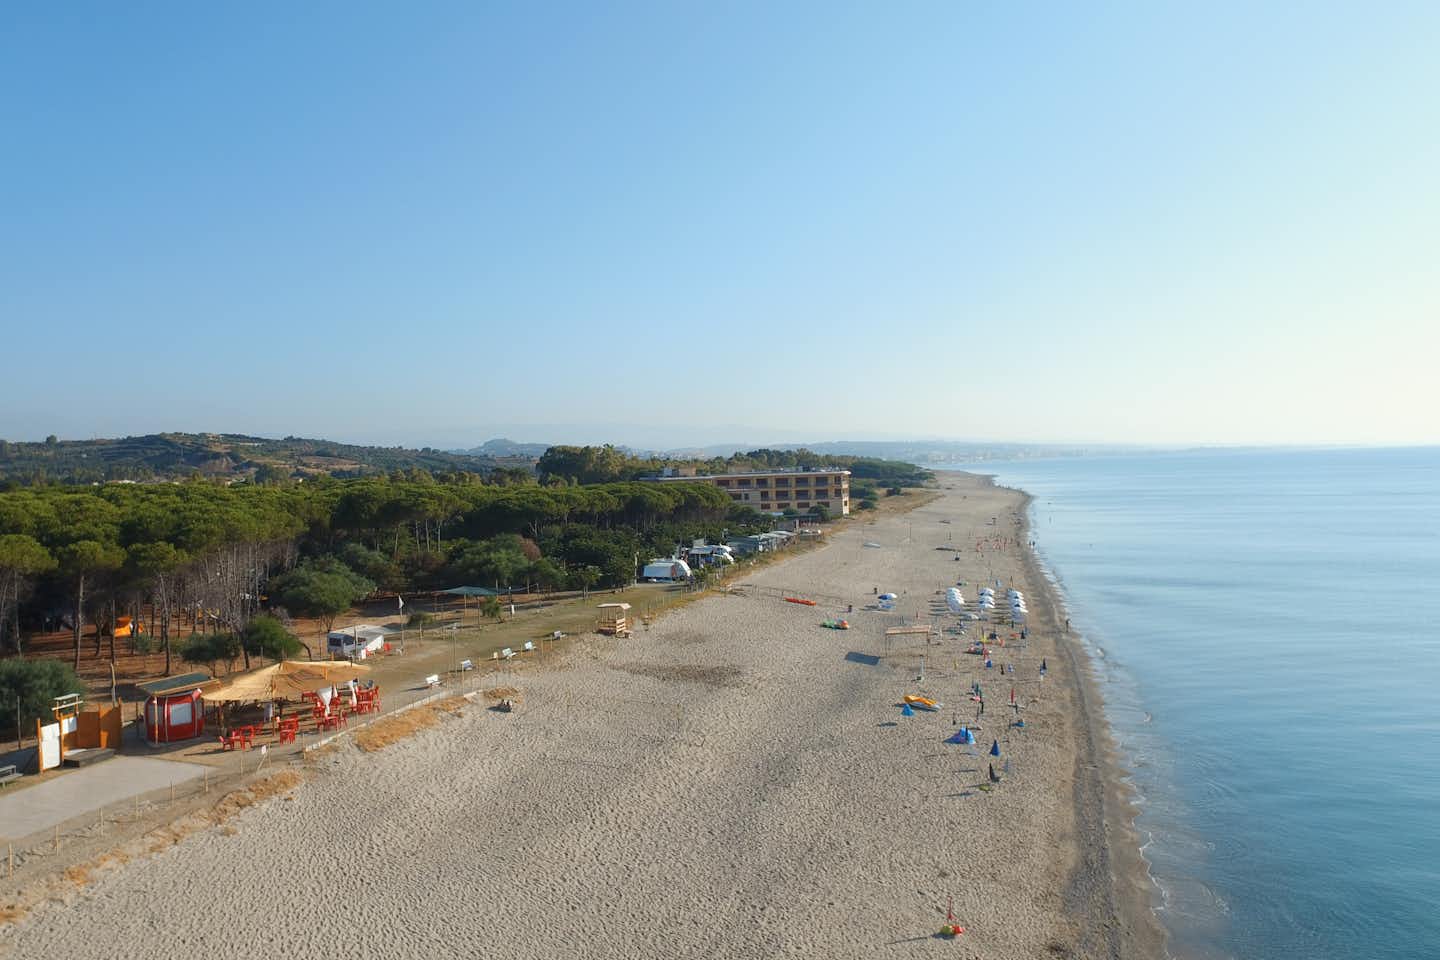 Camping Calabrisella - Luftaufnahme auf den Strand und das Mittelmeer in der Nähe des Campingplatzes